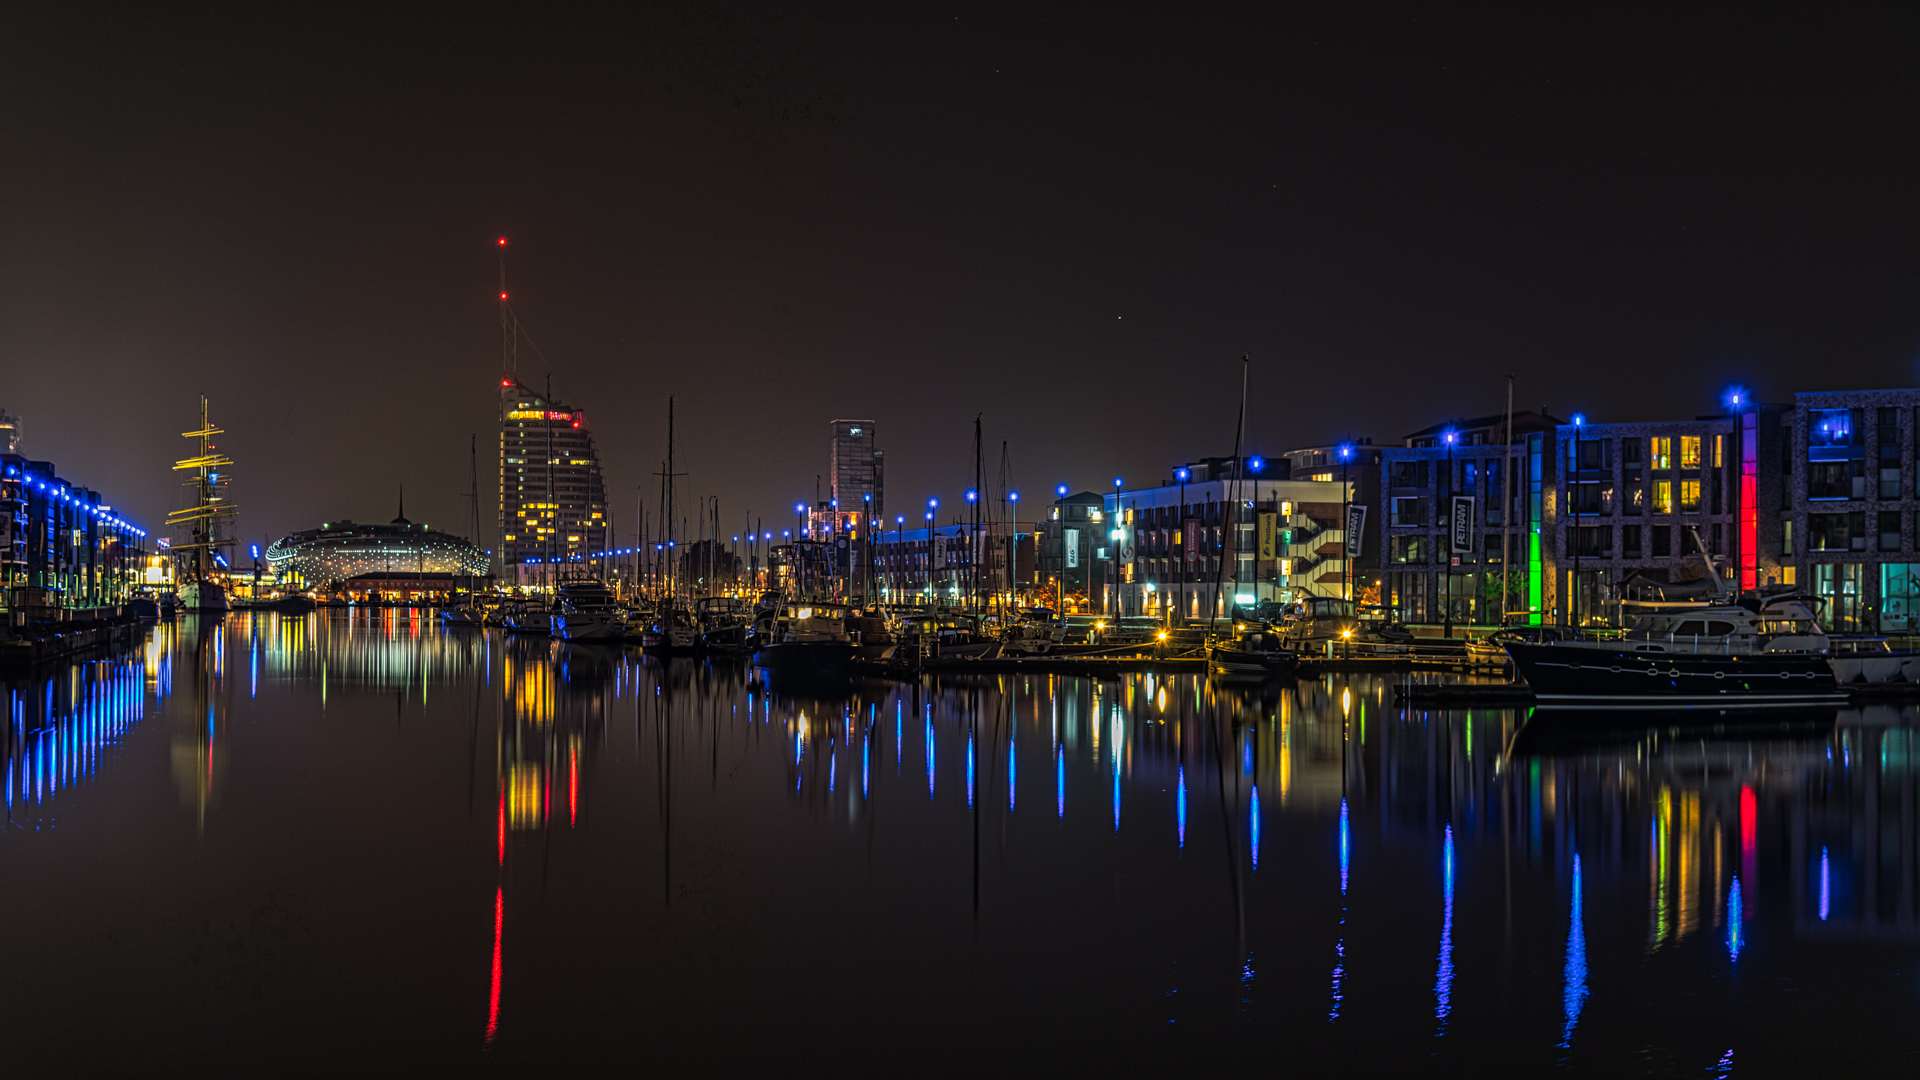 Bremerhaven - Neuer Hafen bei Nacht